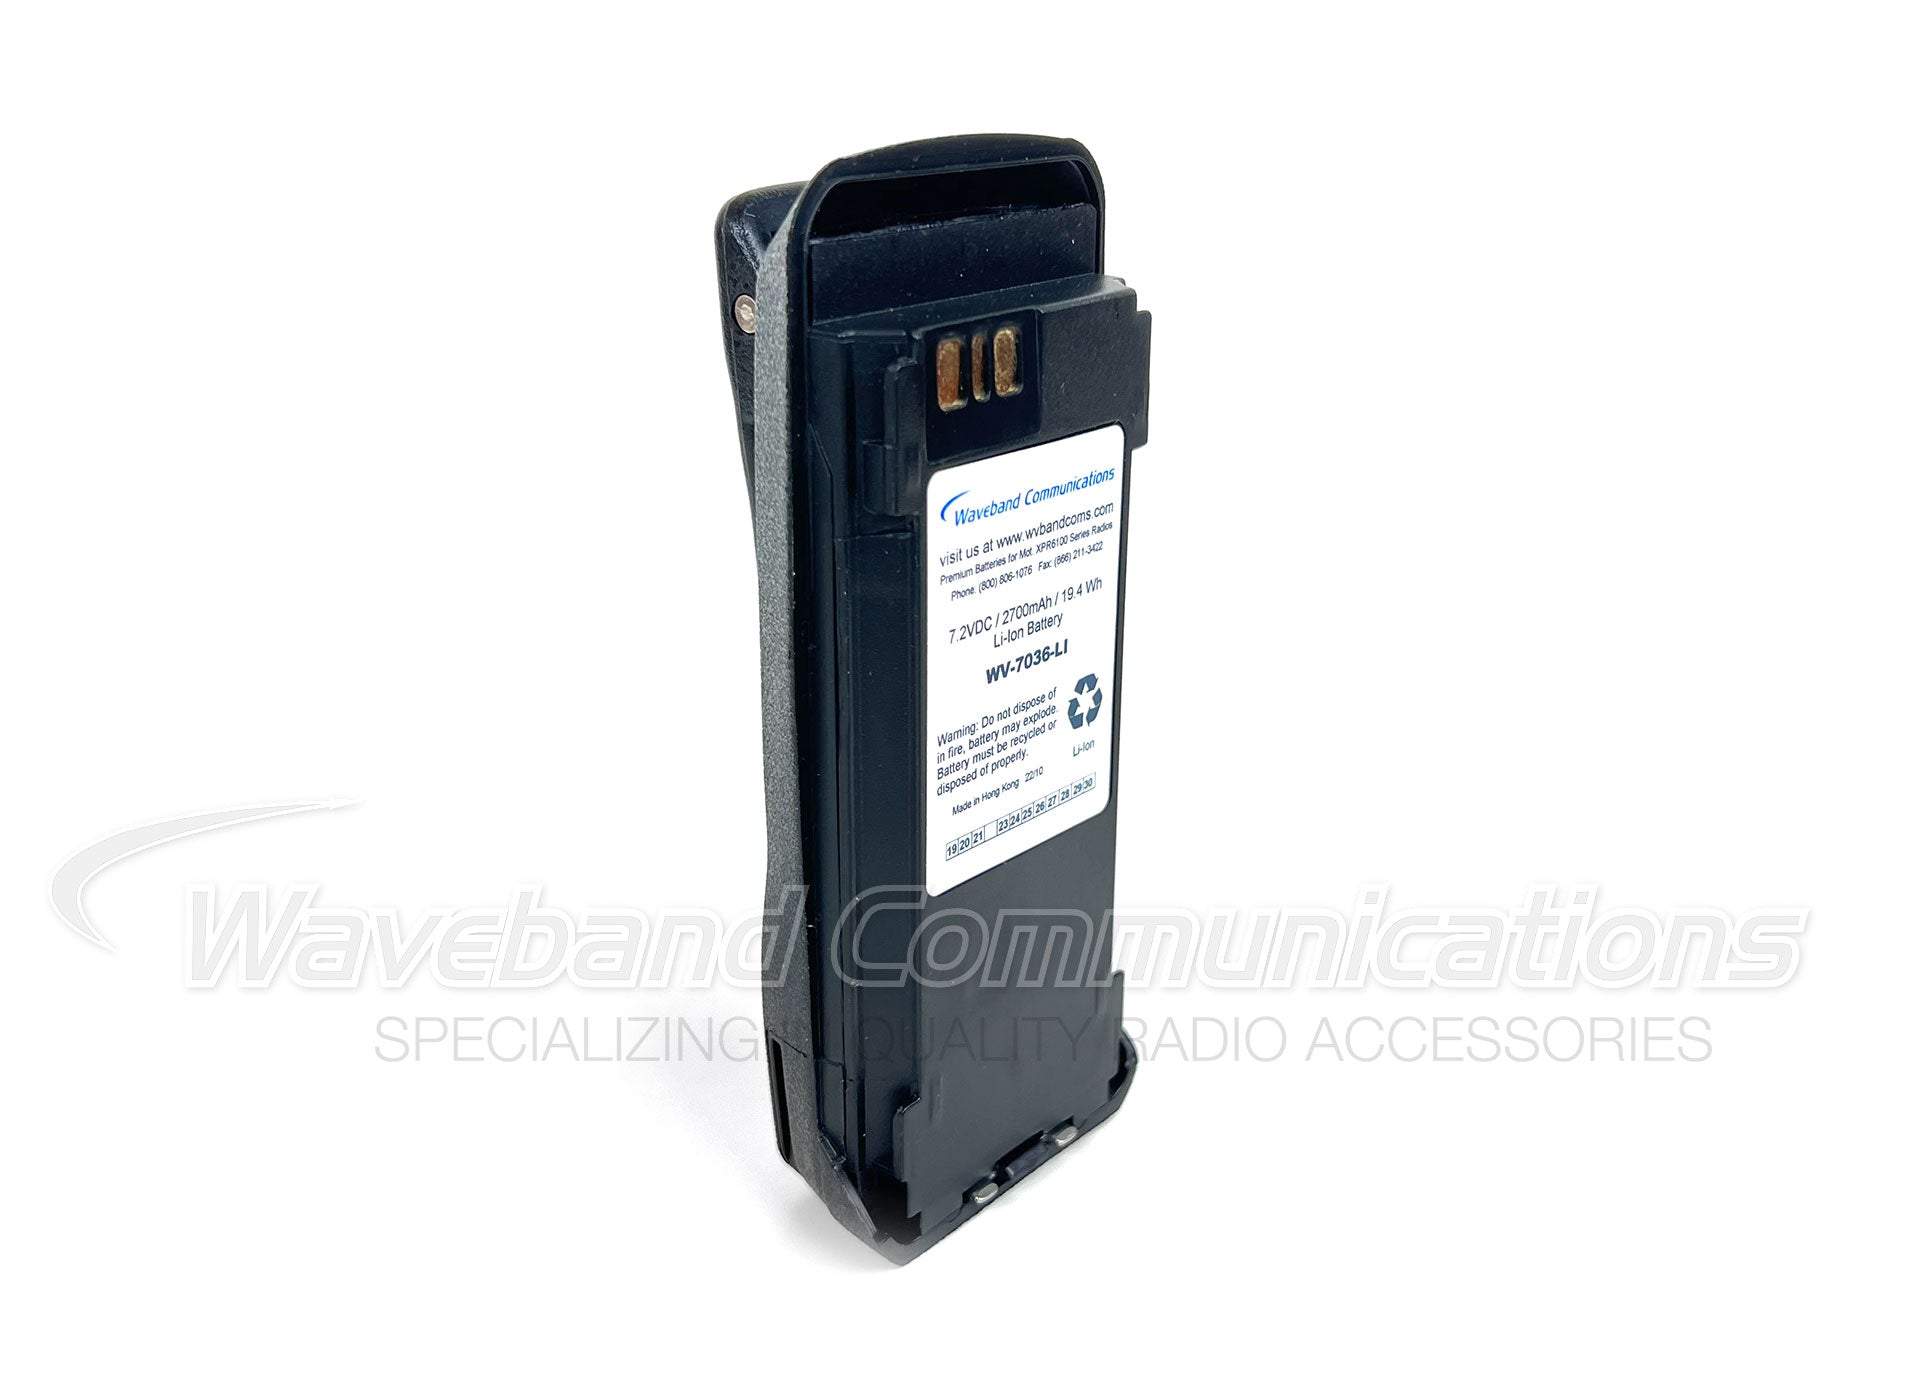 Intrinsiek veilige batterij voor Motorola XPR6100, XPR6300, XPR6350, XPR6380, XPR6500, XPR6550, XPR6580 en Vertex Standard VXD720